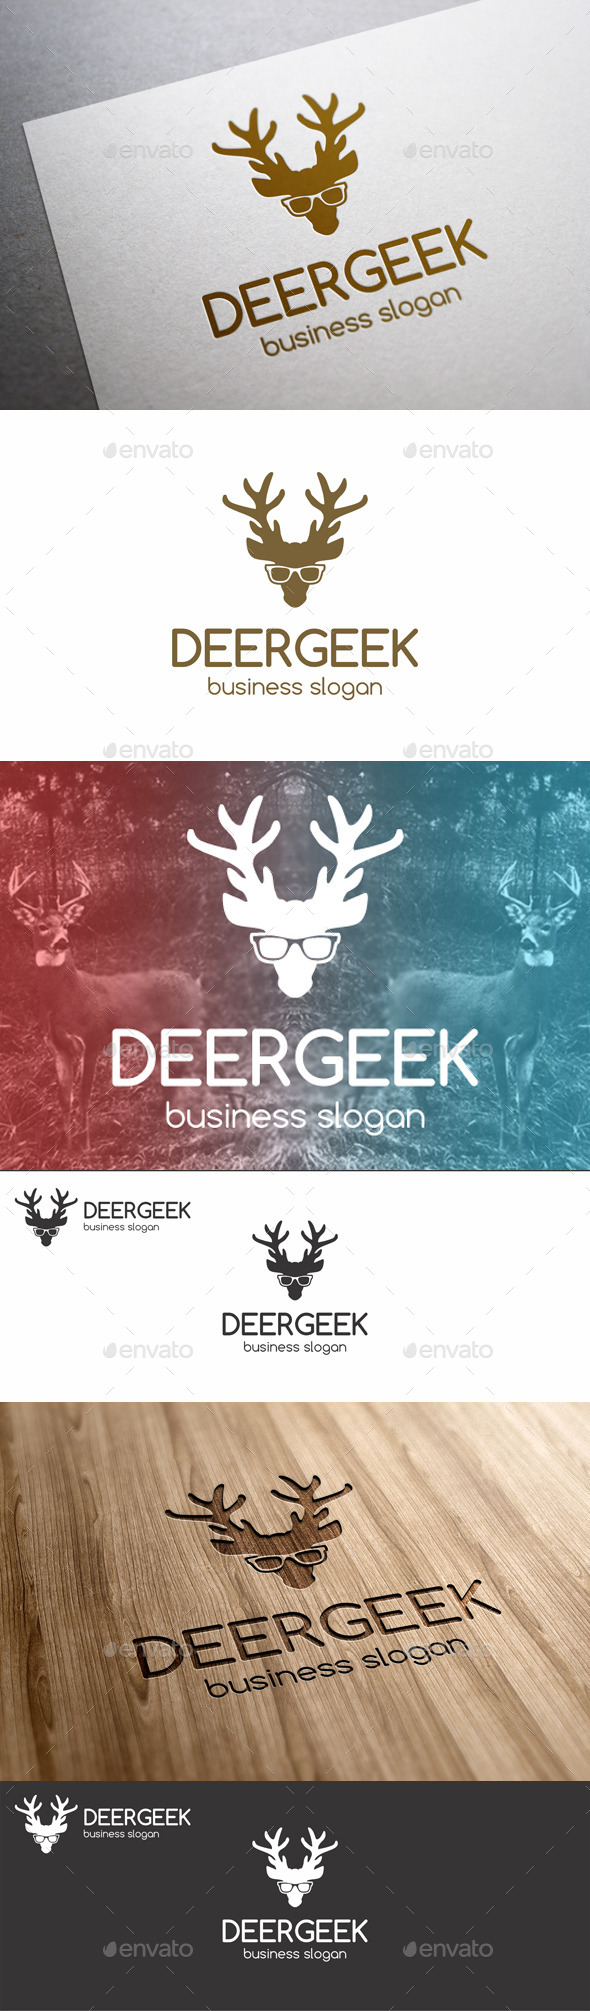 Deer Geek Animal Logo